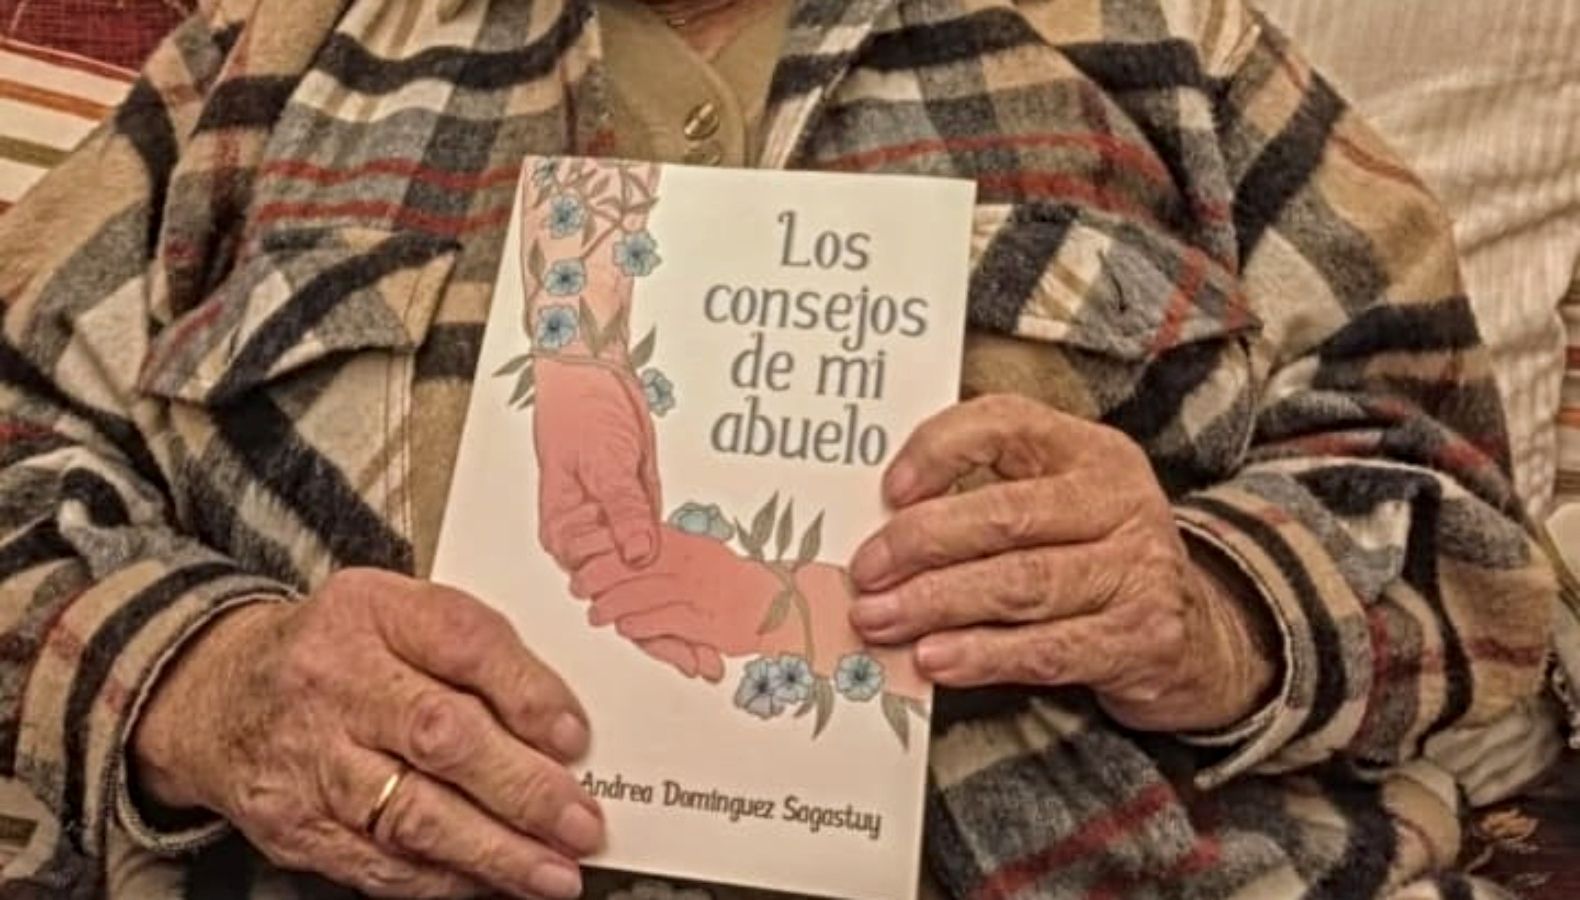 'Los consejos de mi abuelo', un libro que aborda la conexión y necesidad mutua de abuelos y nietos